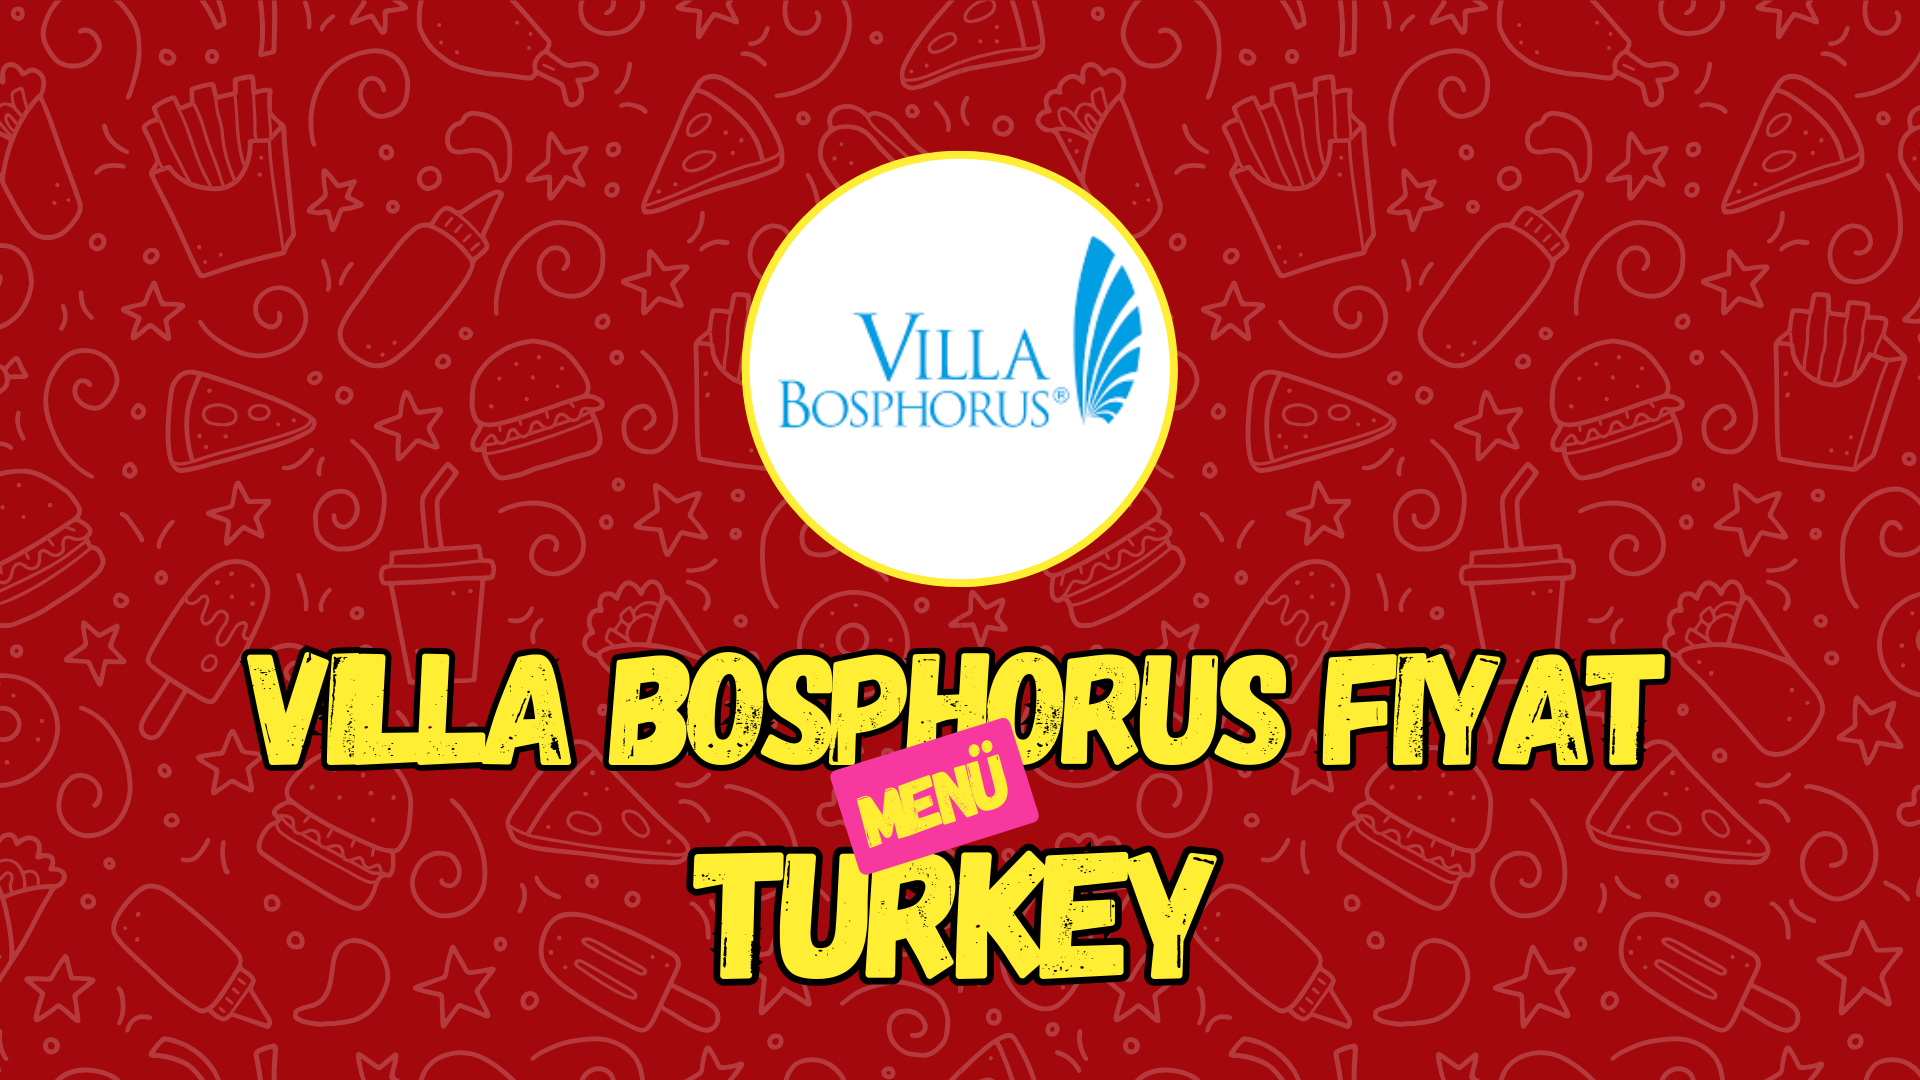 Villa Bosphorus Fiyat